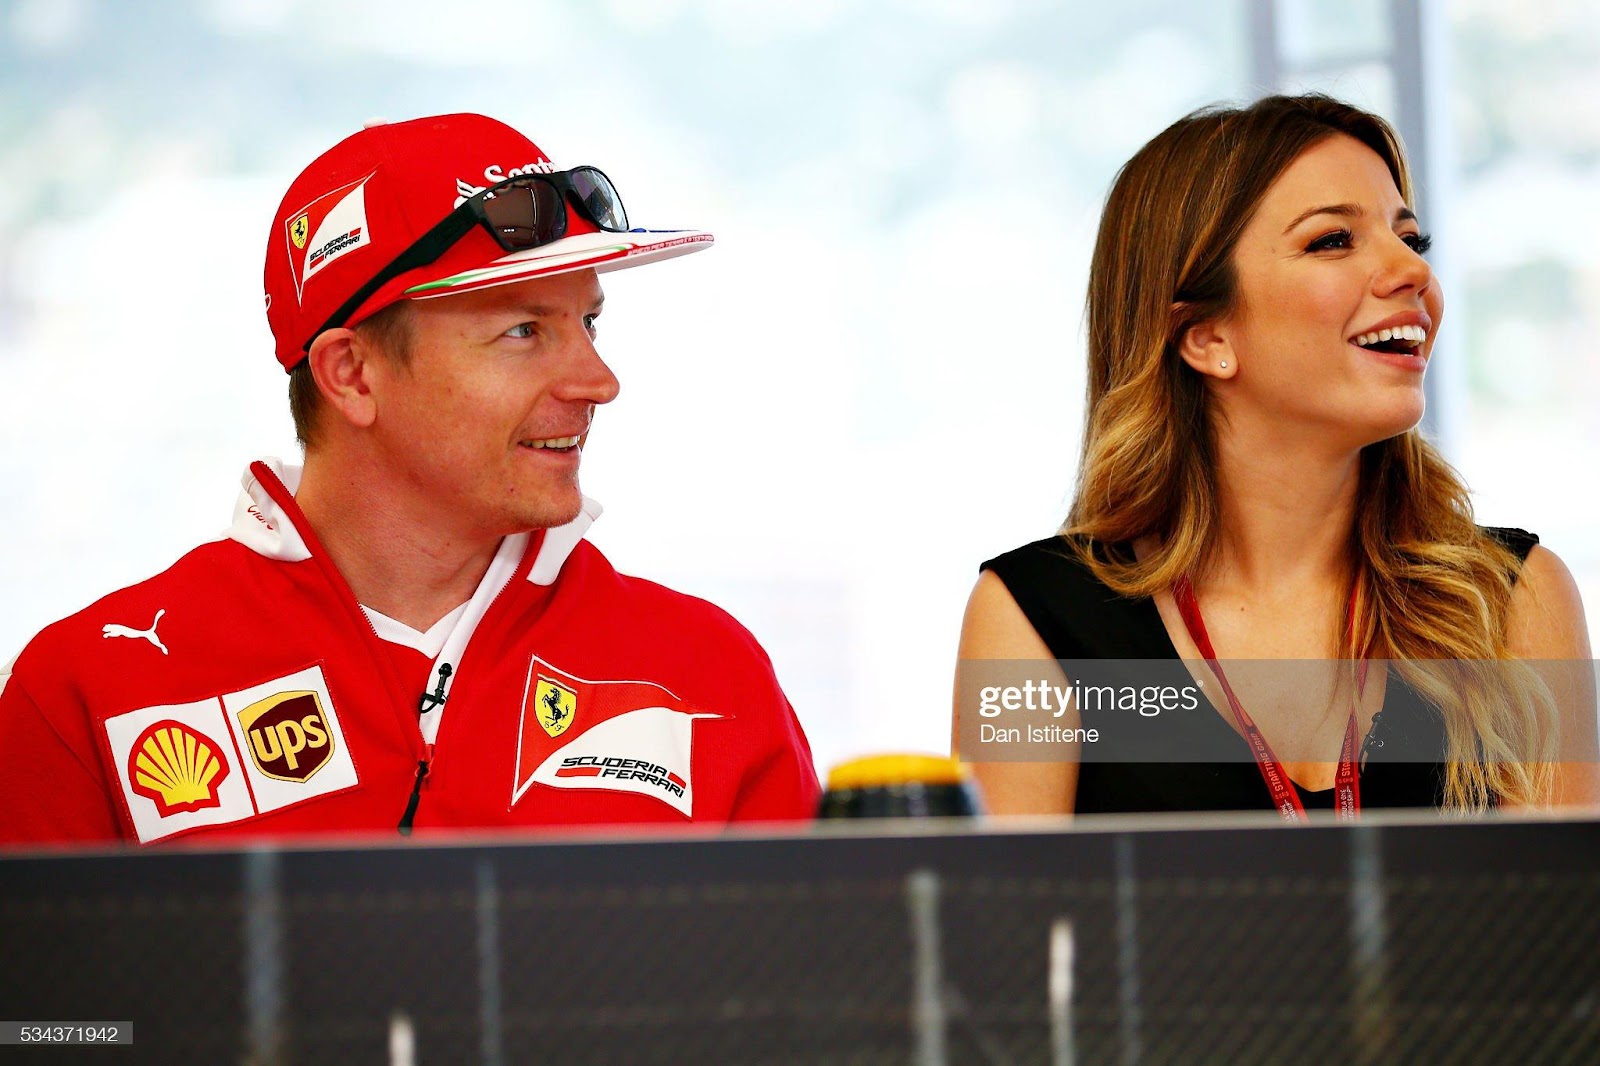 Kimi Raikkonen, Ferrari, with Federica Masolin, Sky F1 Italy, at the Shell F1 quiz during the F1 Grand Prix of Monaco at Circuit de Monaco on May 27, 2016 in Monte-Carlo.